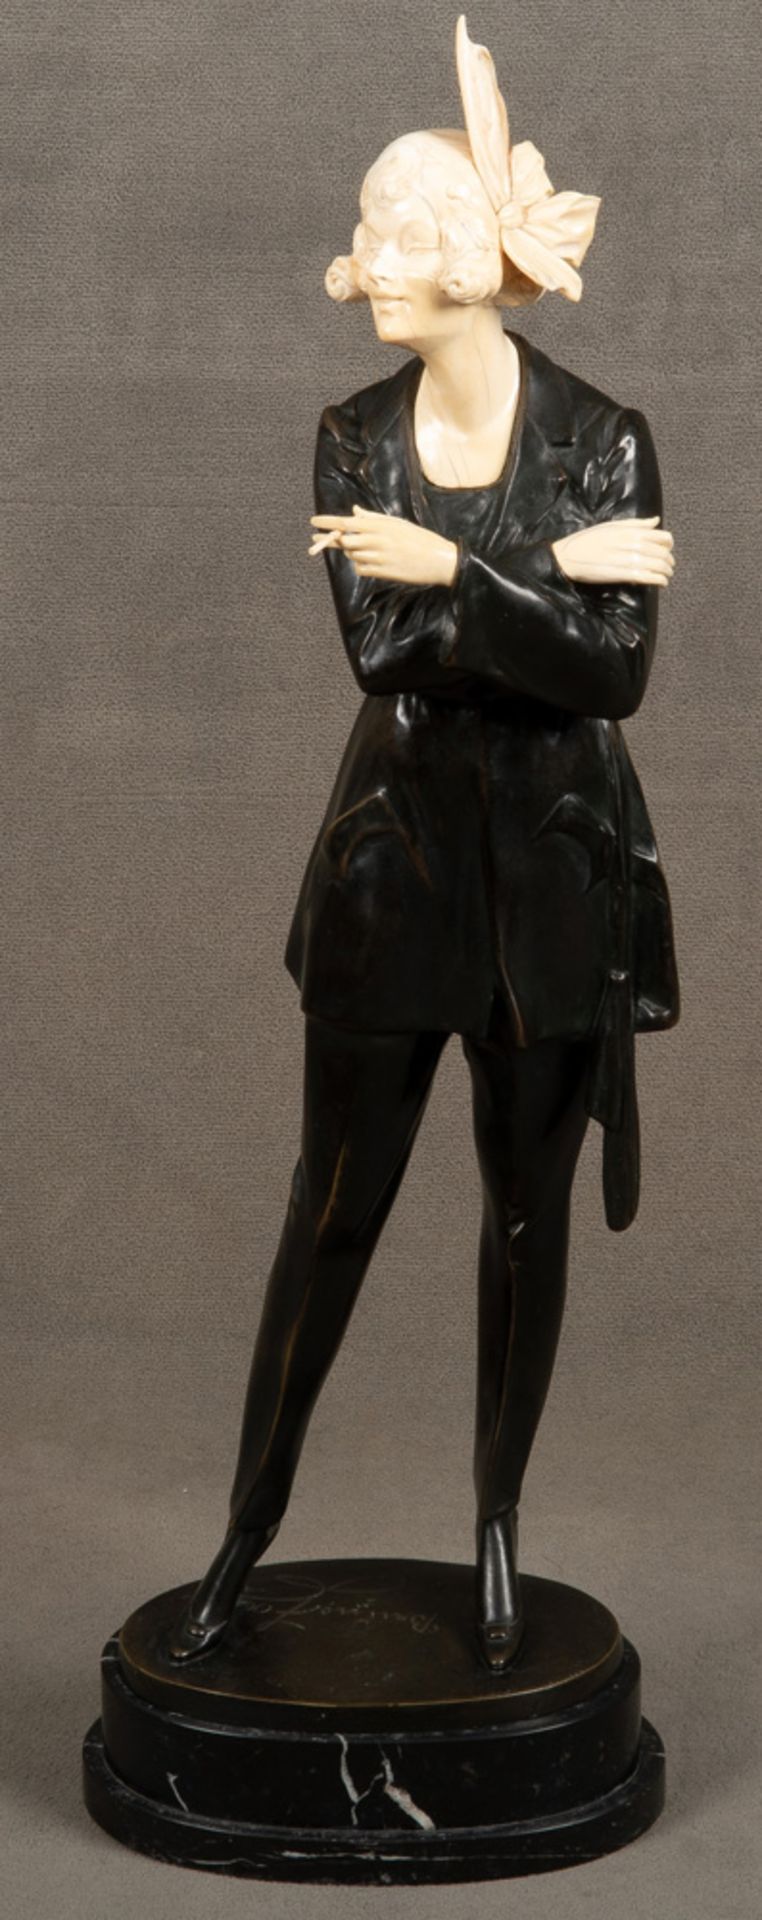 Bruno Zach (1891-1945). Stehende Frau mit Zigarette. Bronze, mit Elfenbeinschnitzereien, auf der